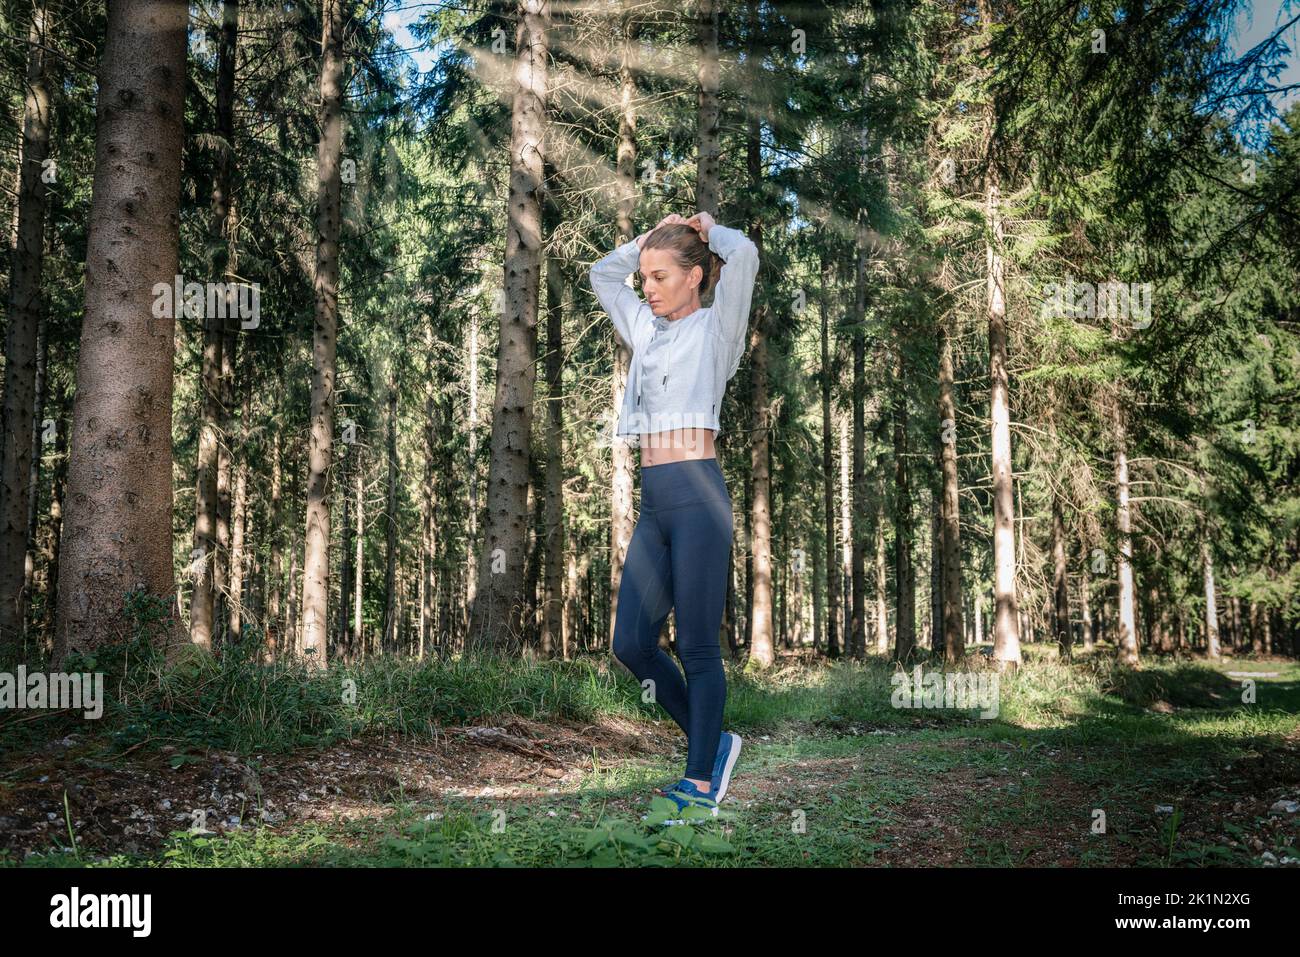 Mujer deportiva atando su cabello antes de hacer ejercicio en un bosque. Foto de stock